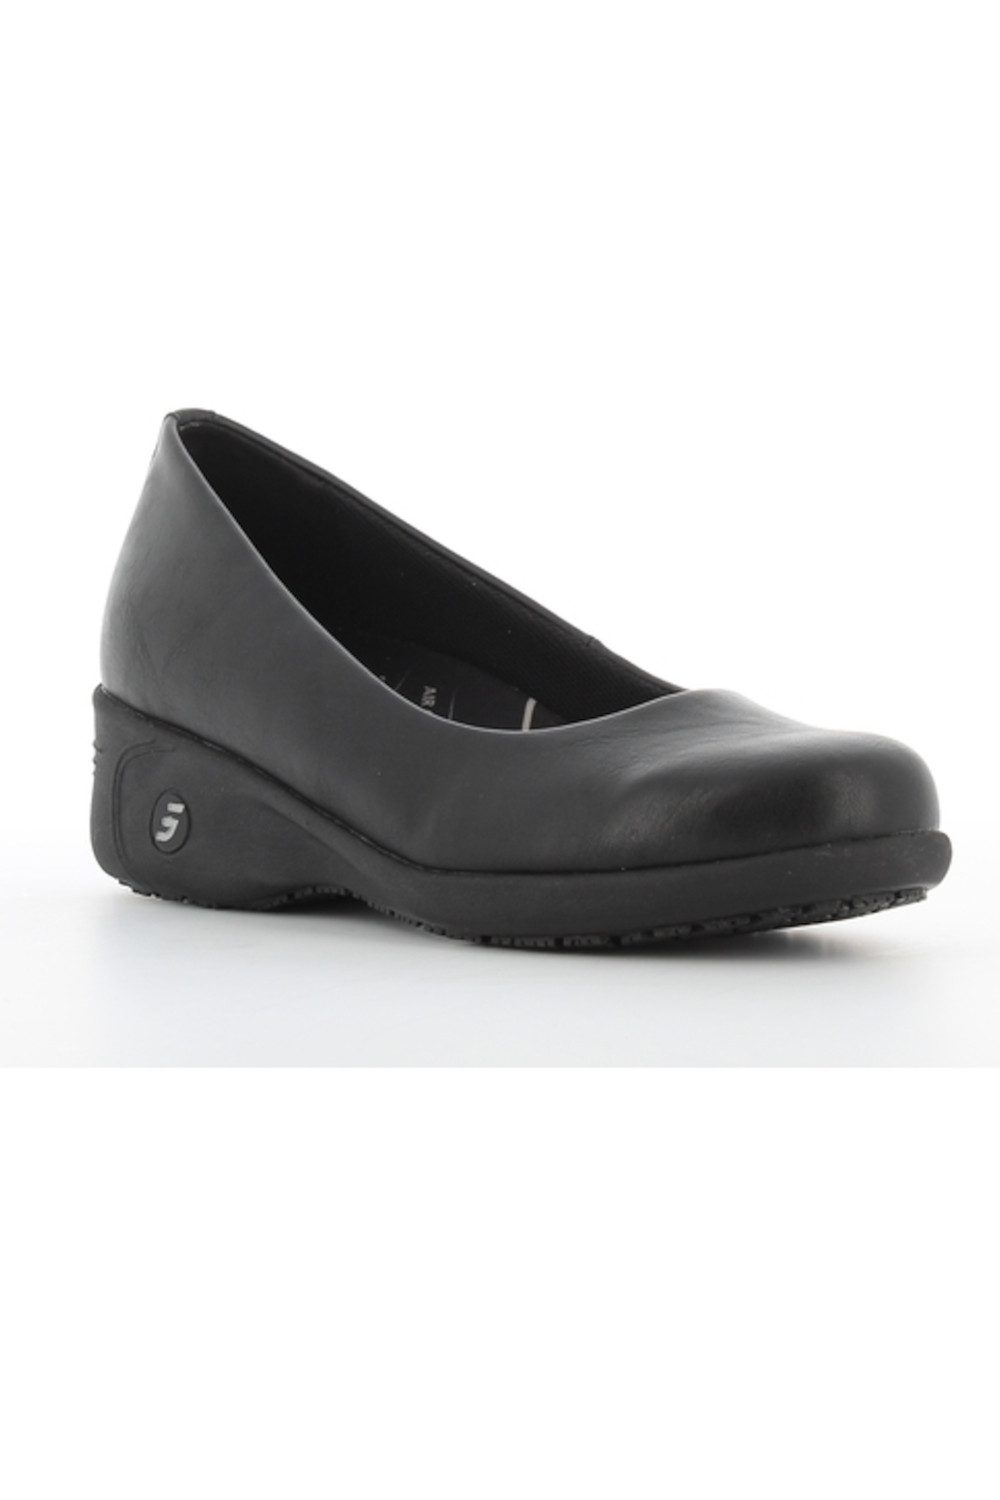 Buty damskie medyczne COLETTE obuwie czarny